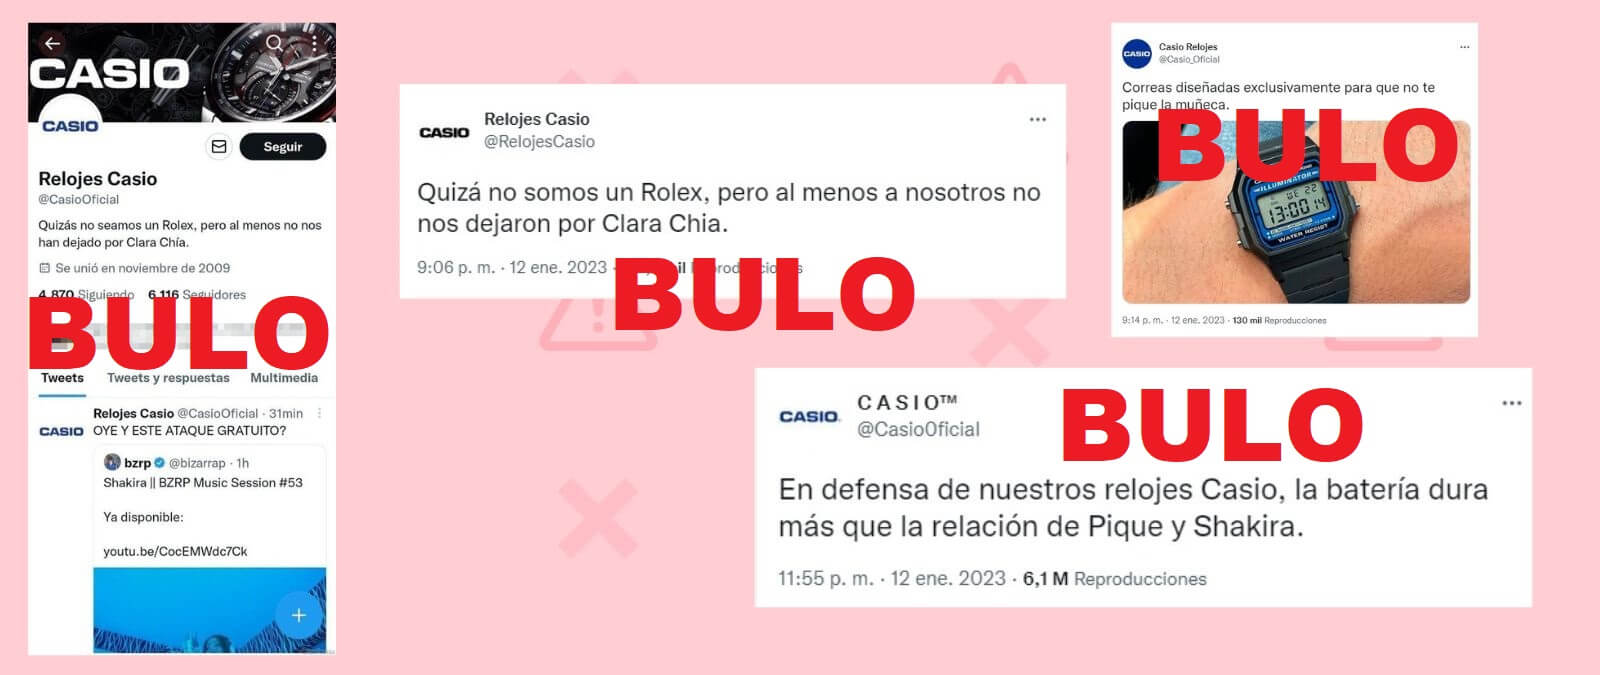 Las cuentas de Twitter falsas que se hacen pasar Casio para difundir mensajes sobre Shakira y Piqué · Maldita.es - Periodismo para que no te la cuelen